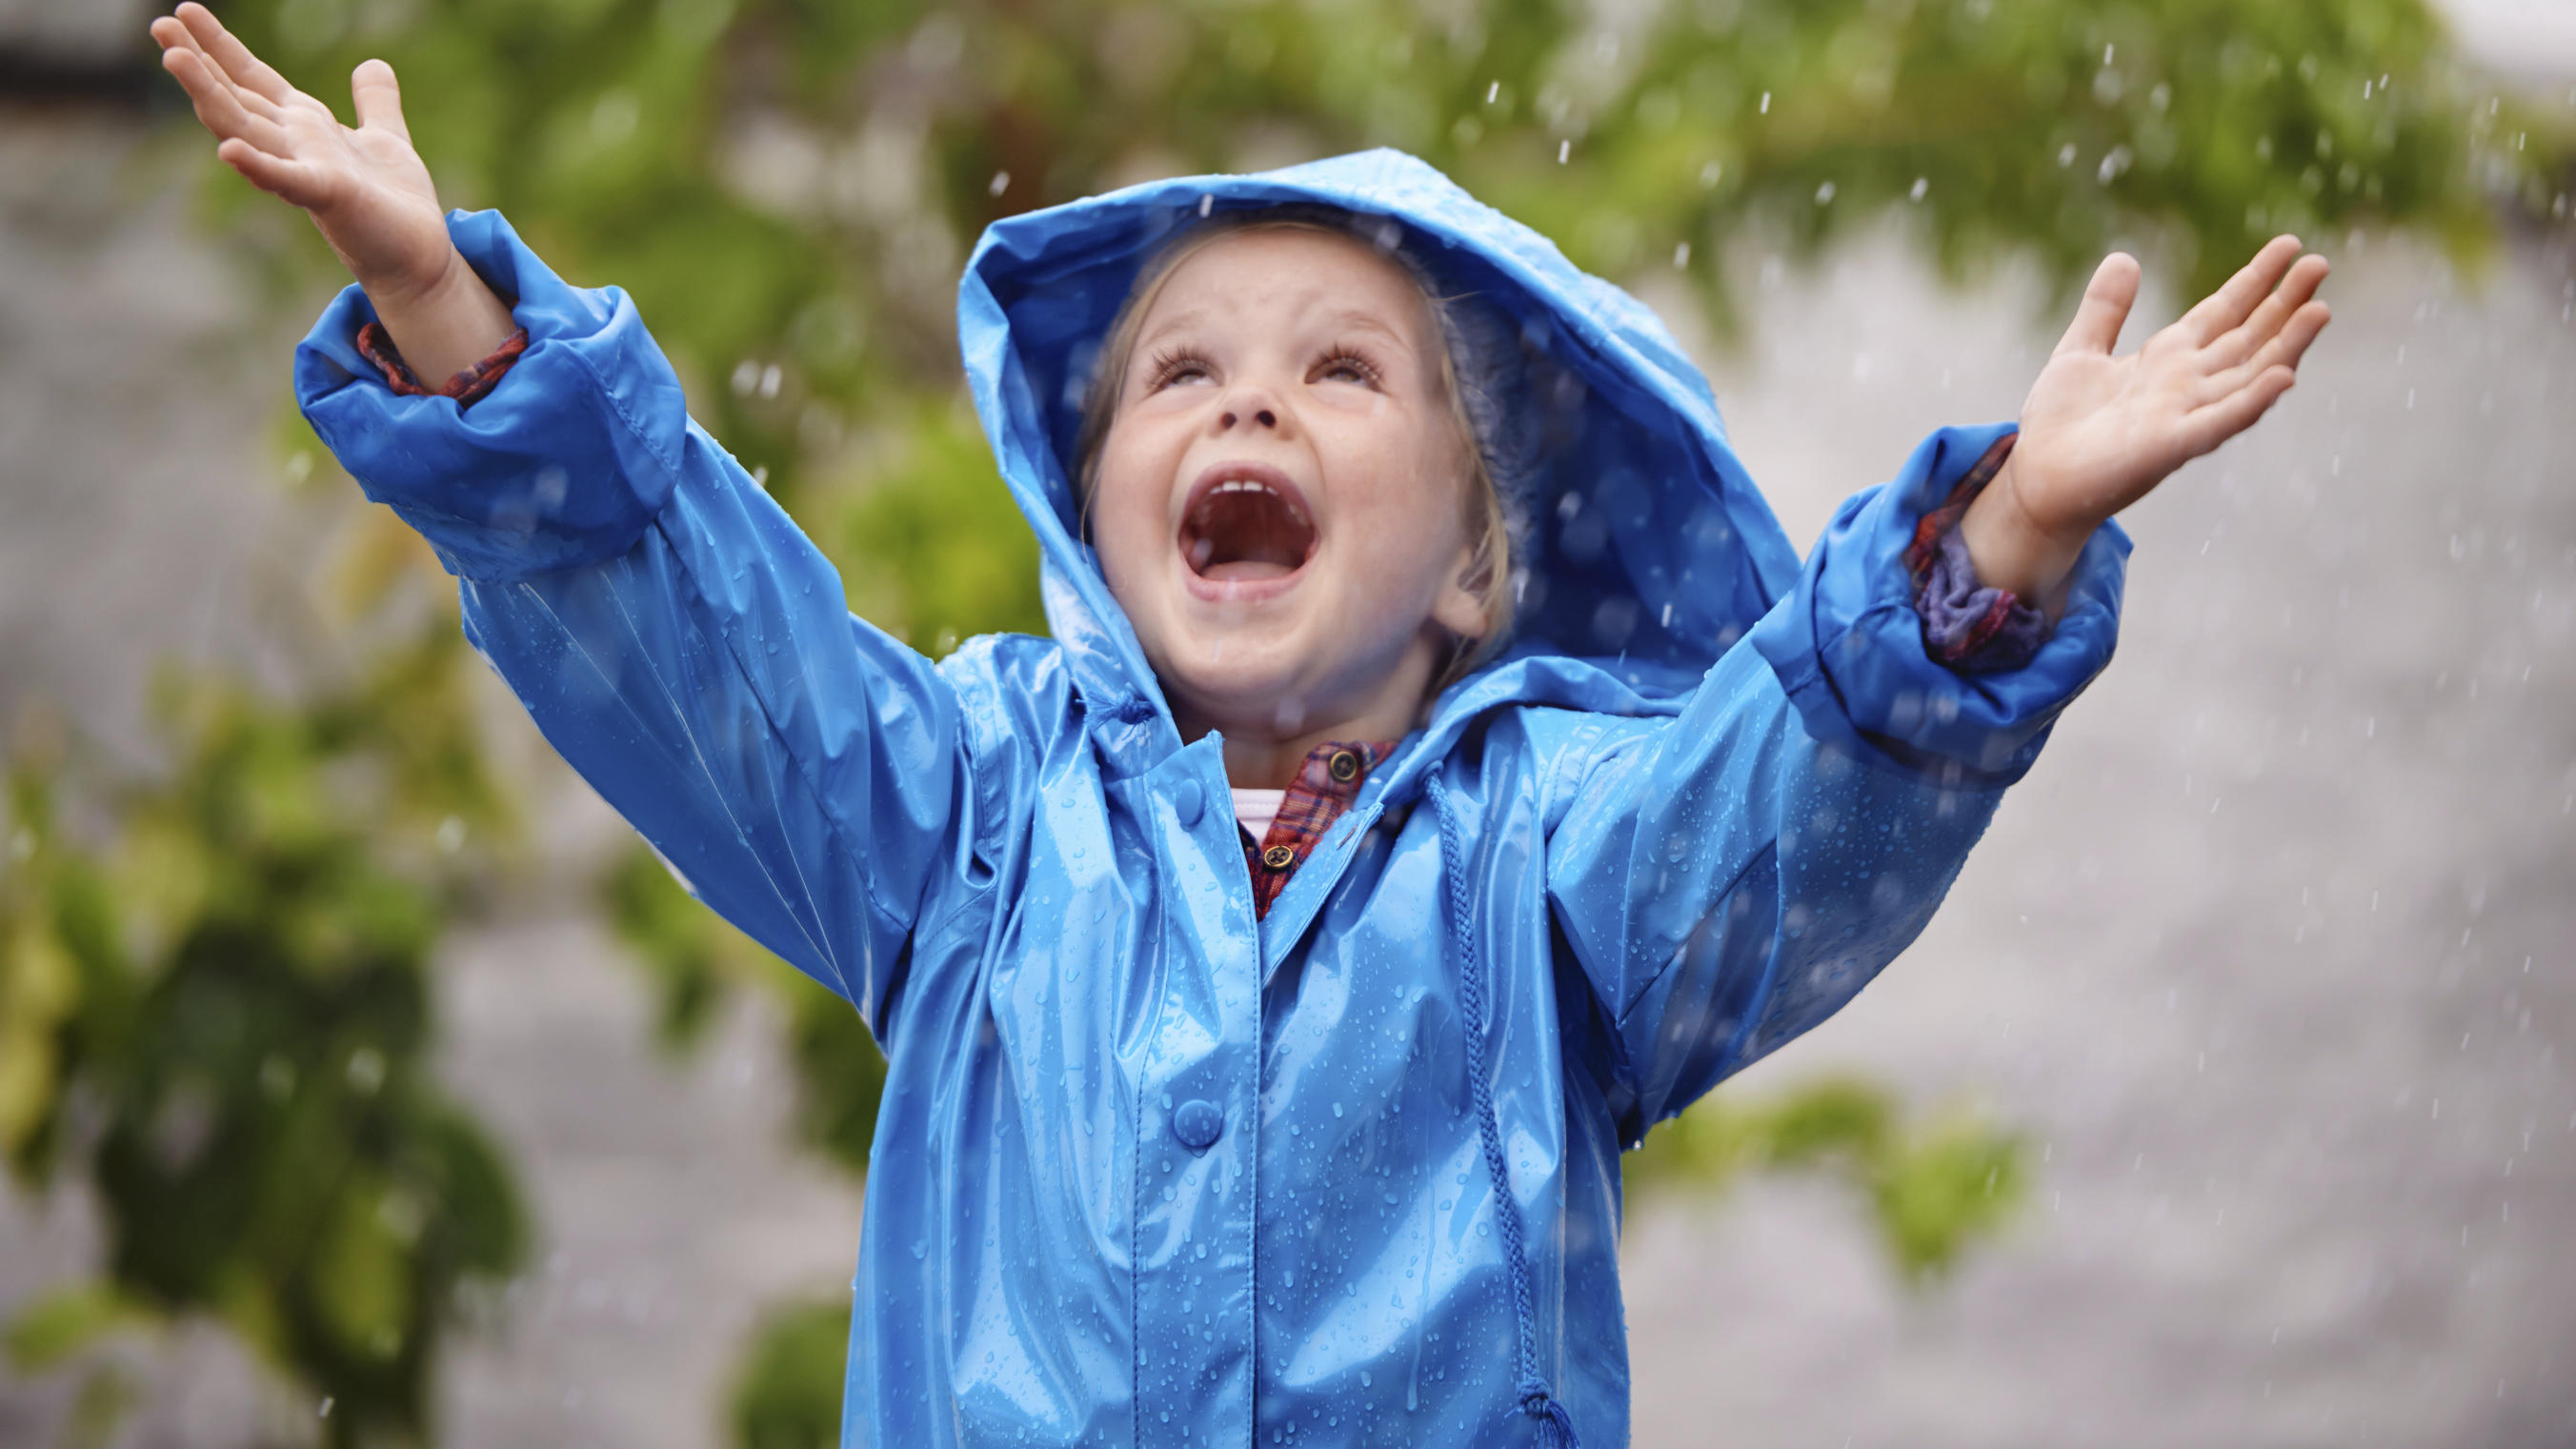 So peppen Sie die Regenjacke Ihres Kindes auf! DIY-Regenjacke mit reflektierendem Namen